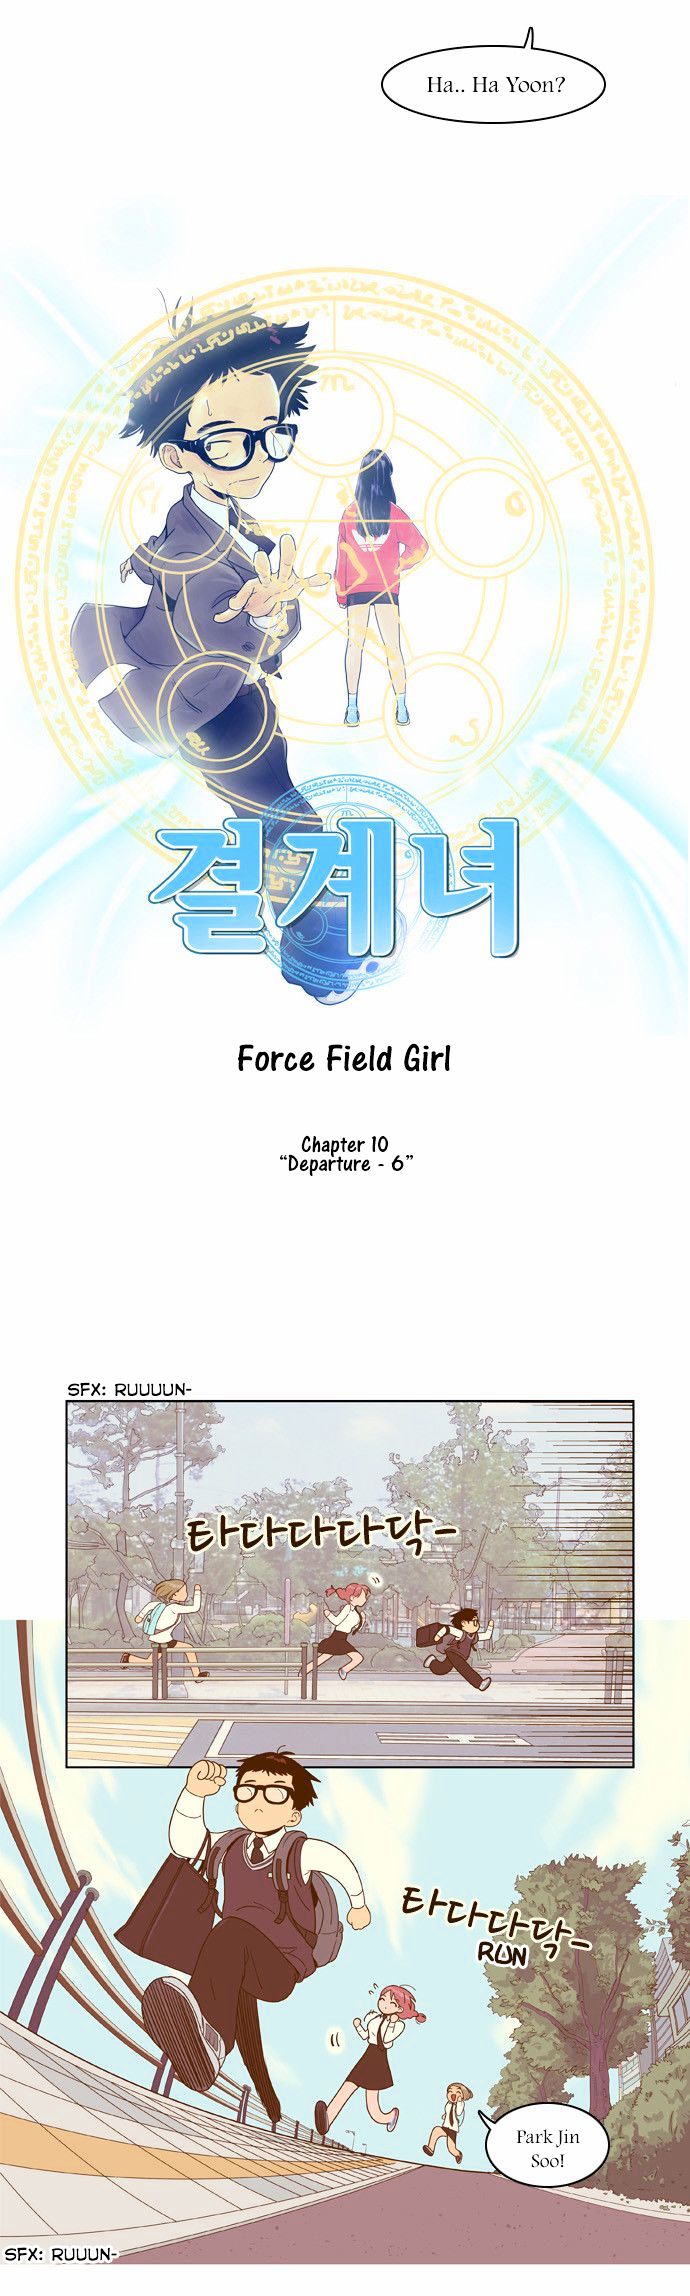 Force Field Girl 10 8